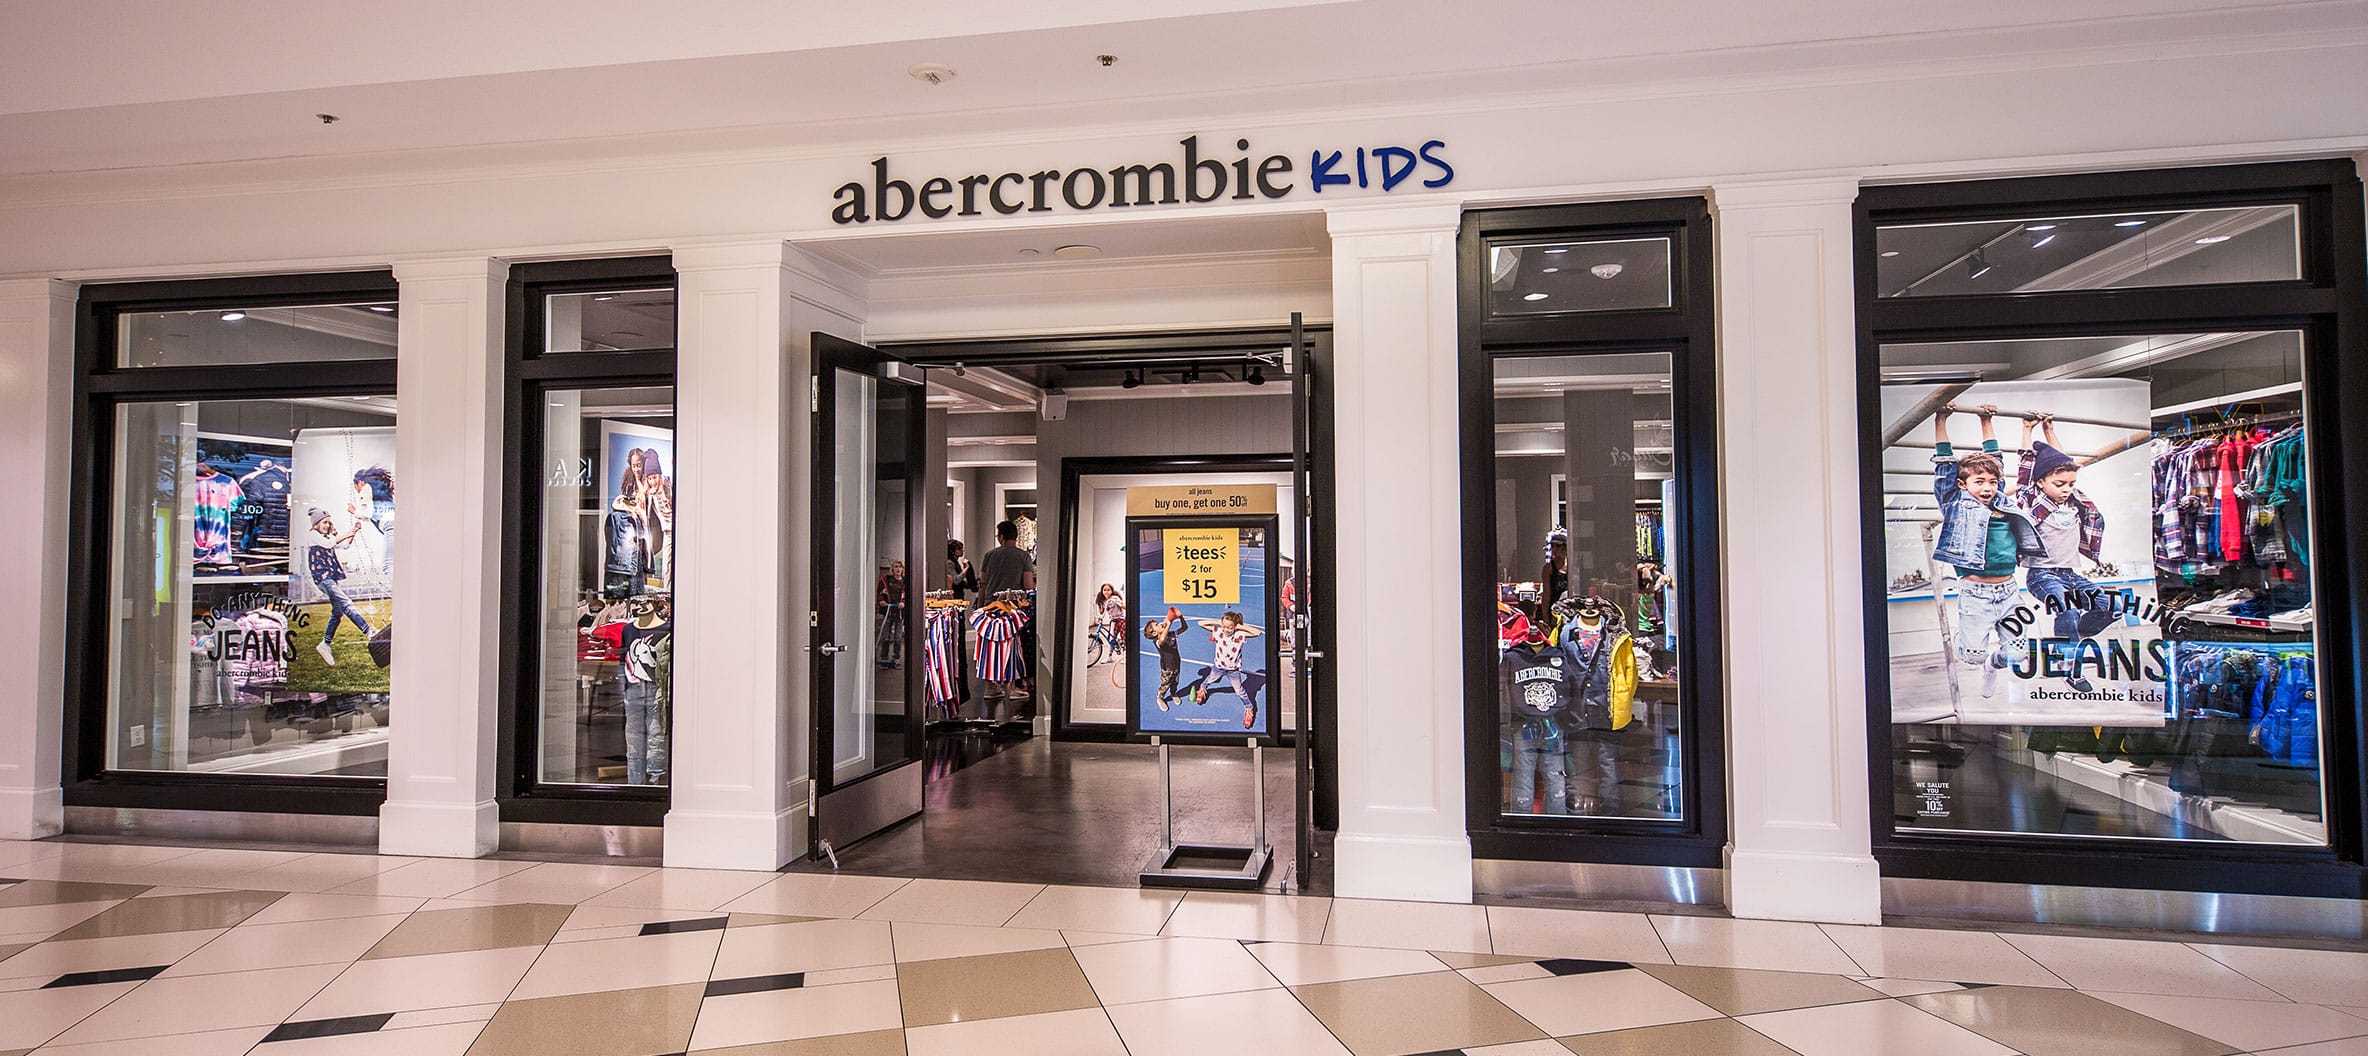 abercrombie kids shop